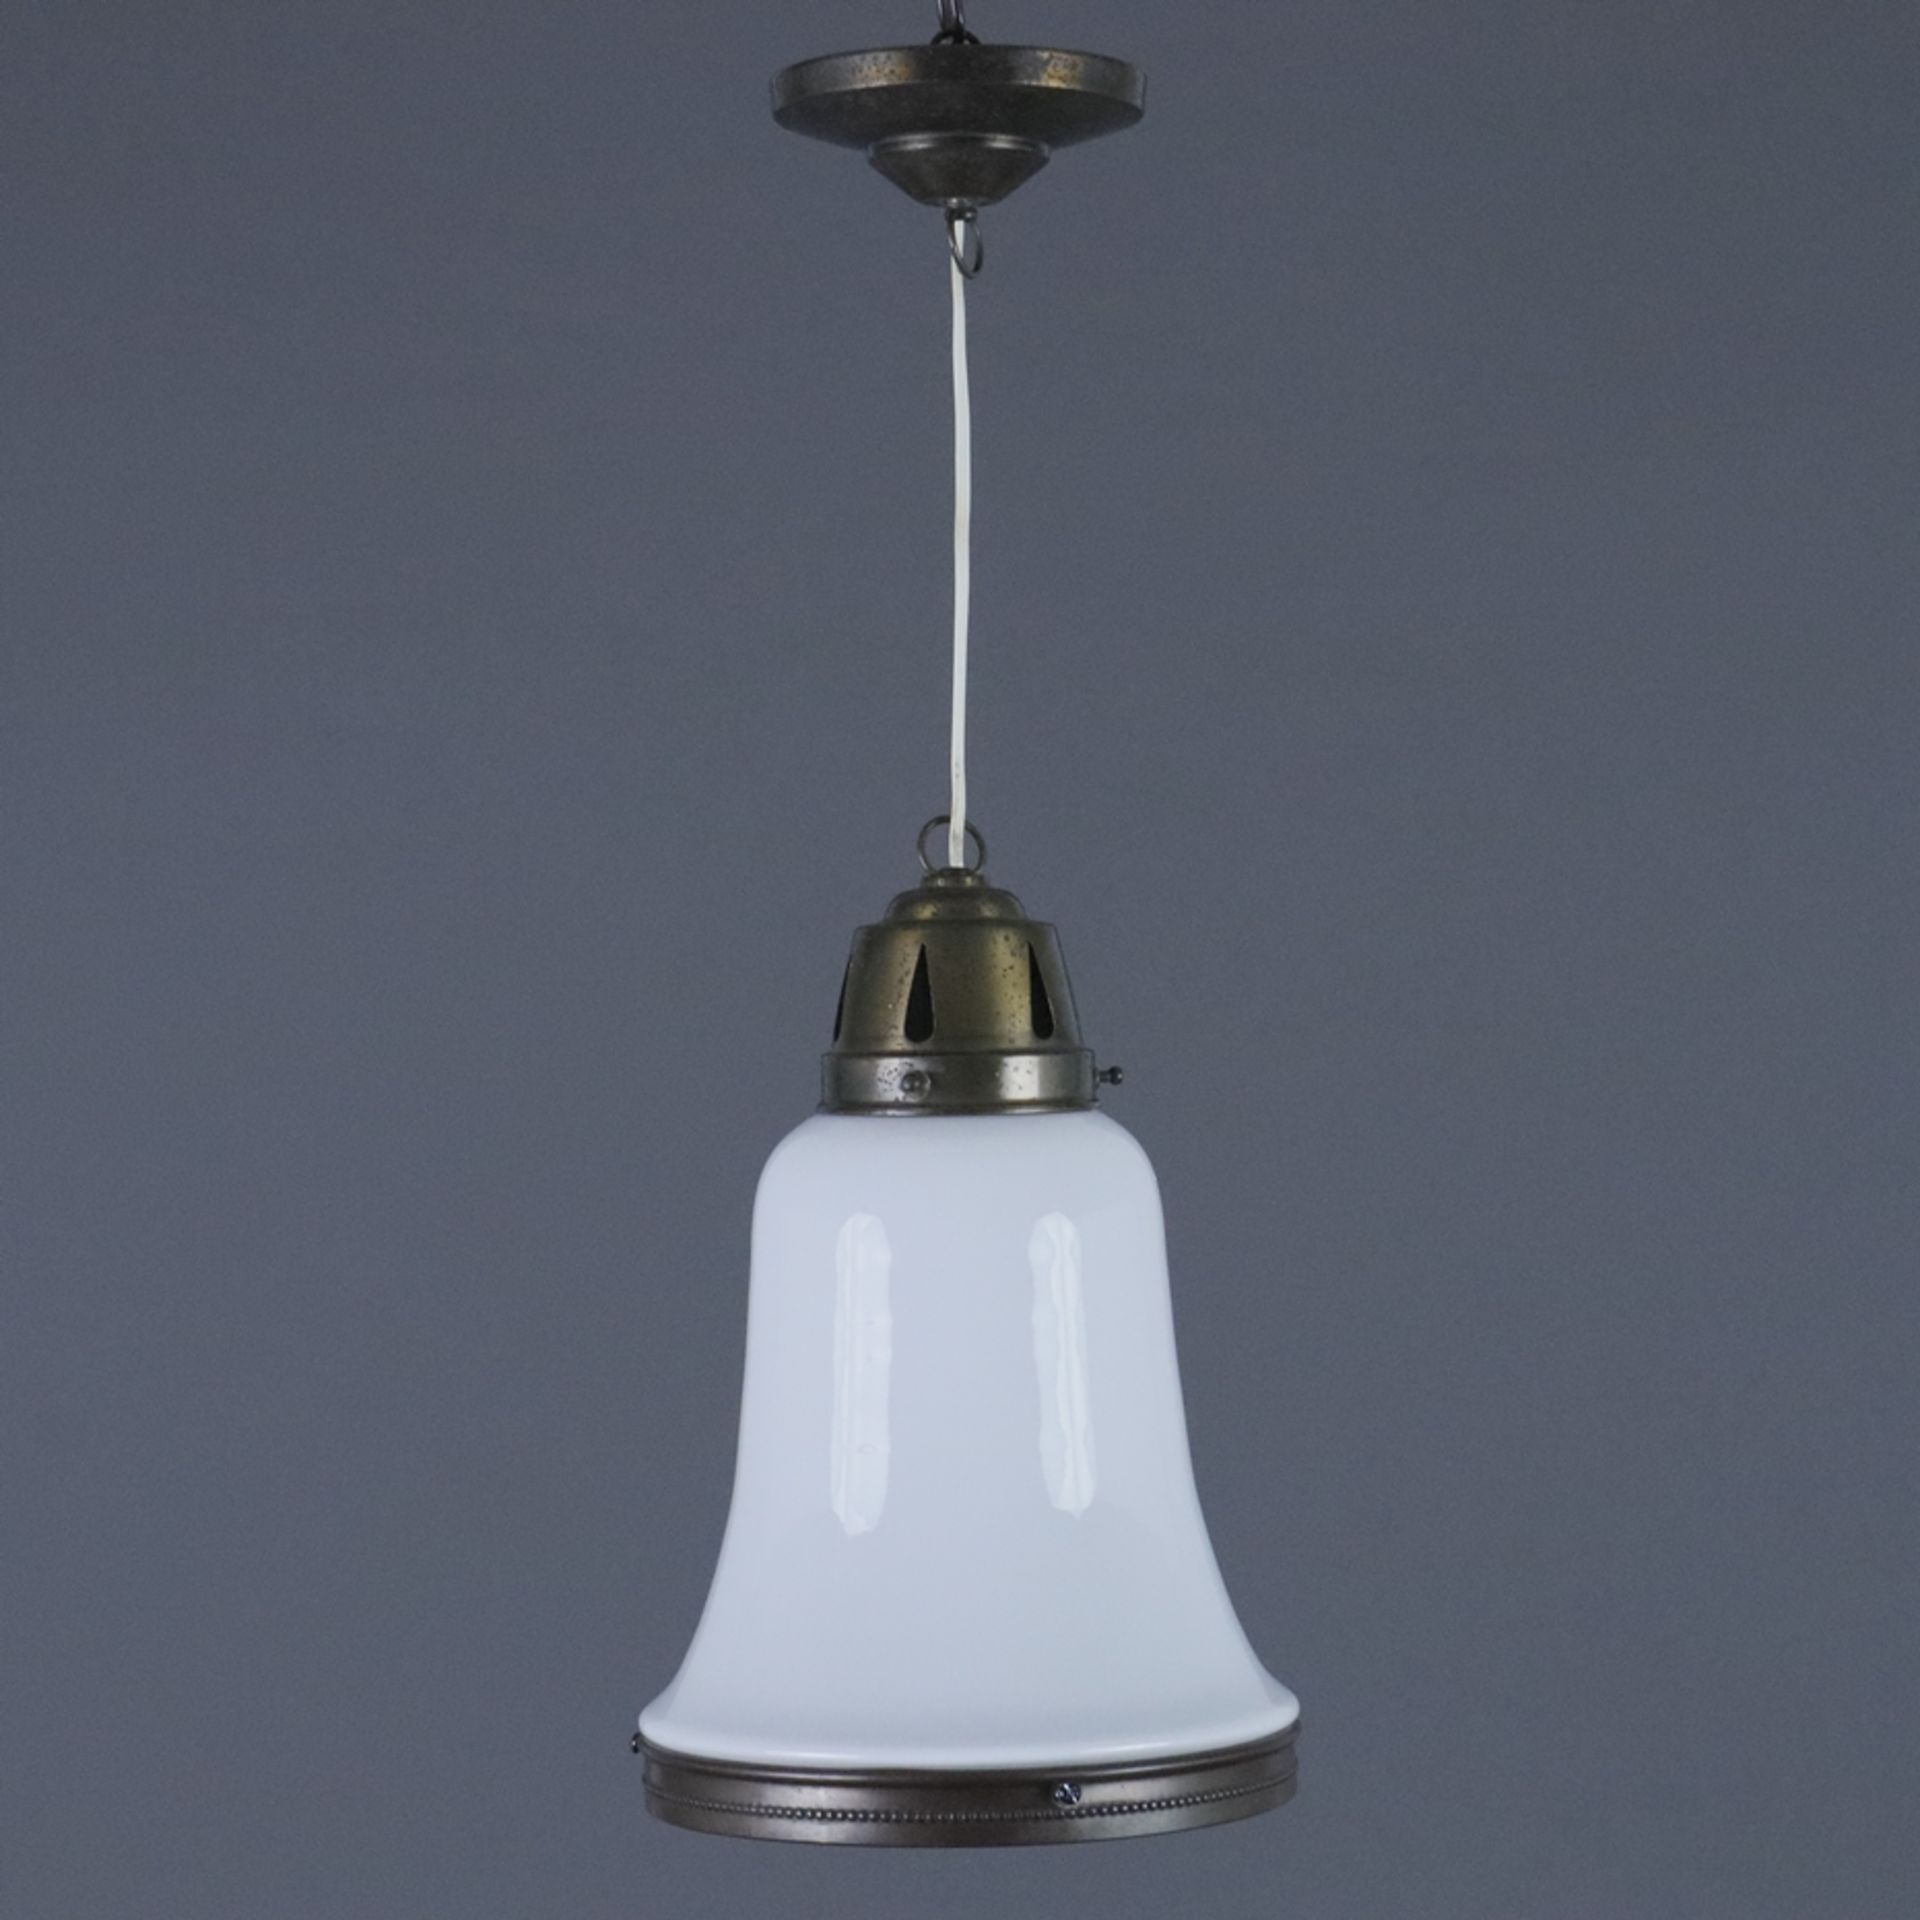 Jugendstil-Deckenlampe - Anfang 20. Jh., glockenförmiger Glas-Schirm mit opalweißem Unterfang, Meta - Bild 2 aus 7